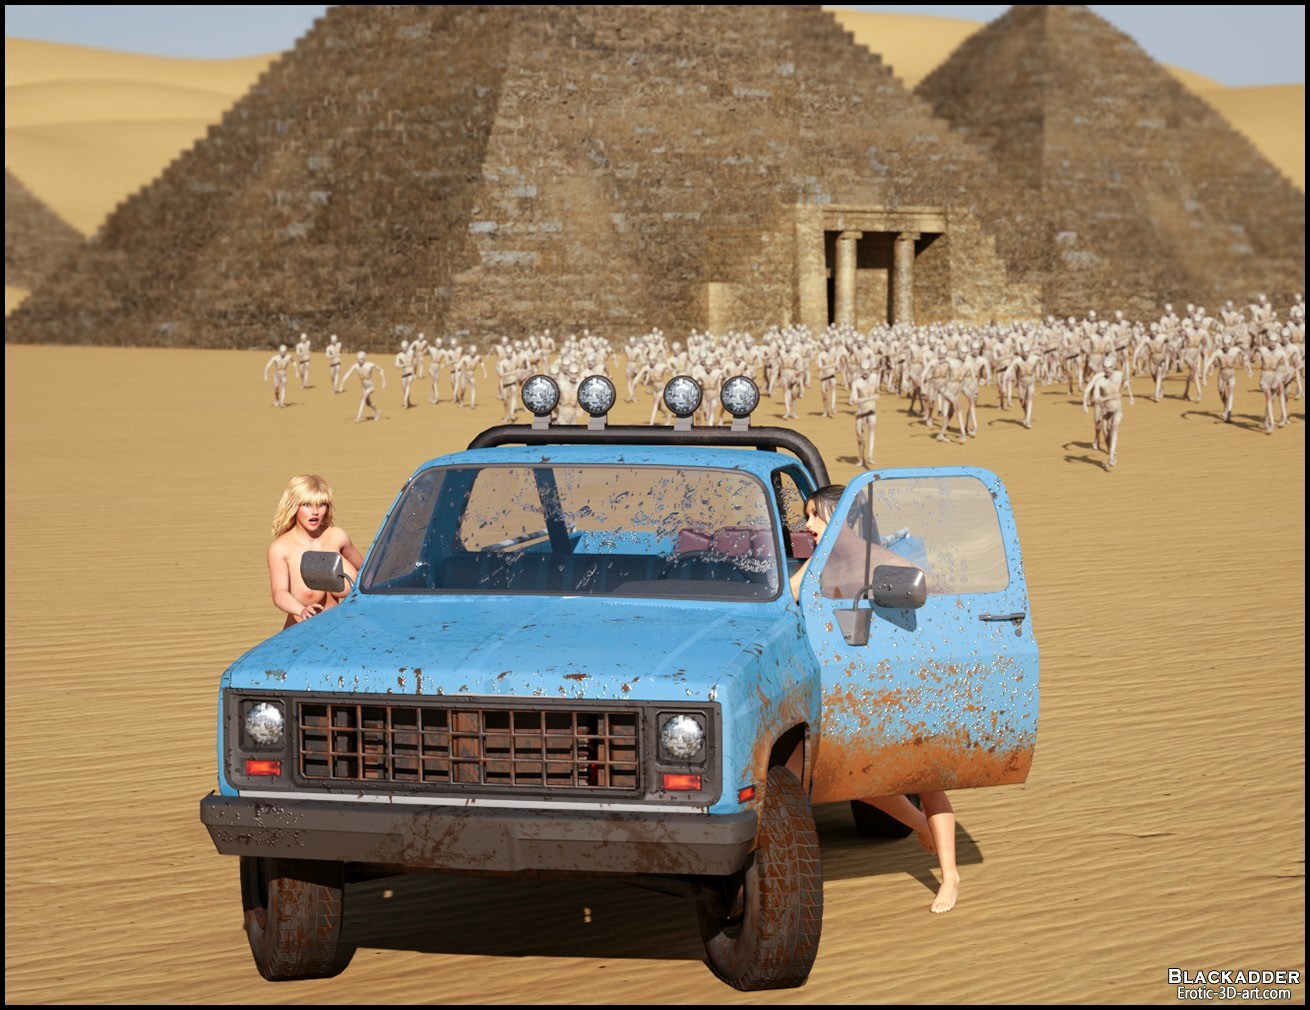 blackadder Reise zu ägypten 3 Teil 4